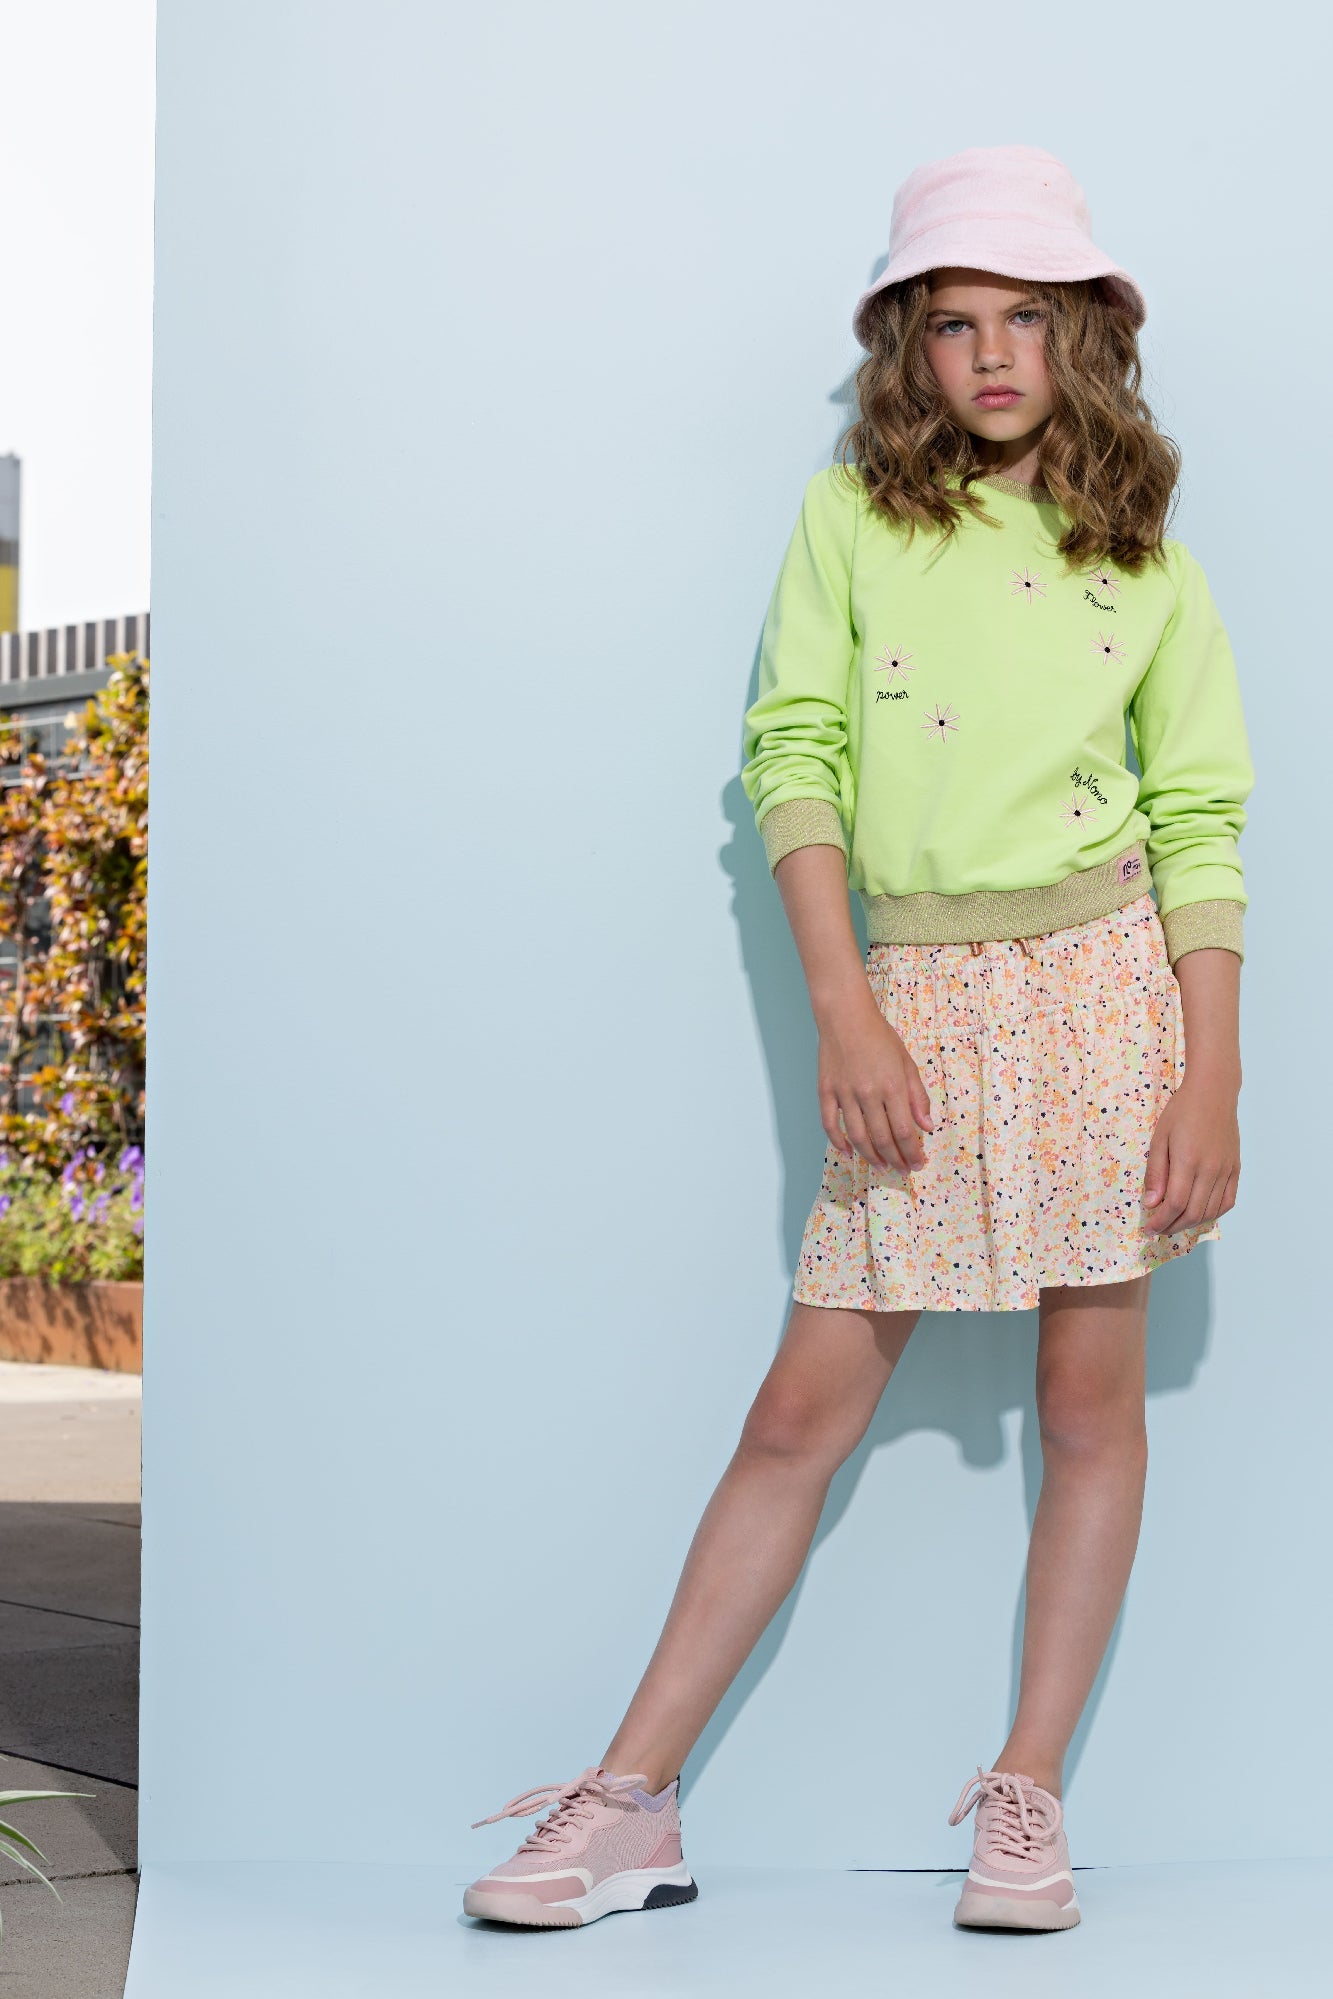 Meisjes Nellie skirt short with elastic details + short lining van NoNo in de kleur Sour Lime in maat 134-140.